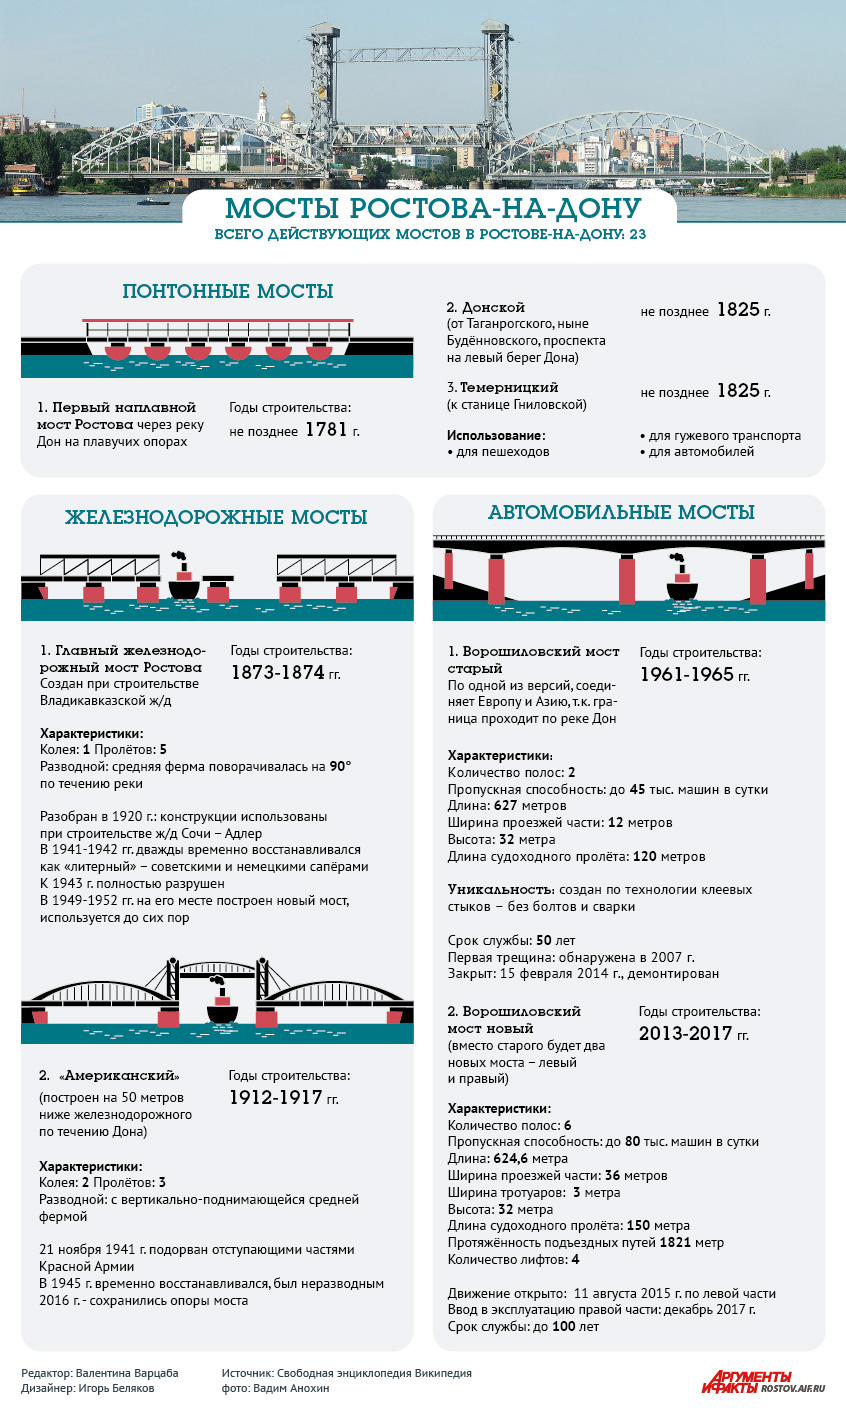 Мосты Ростова, инфографика